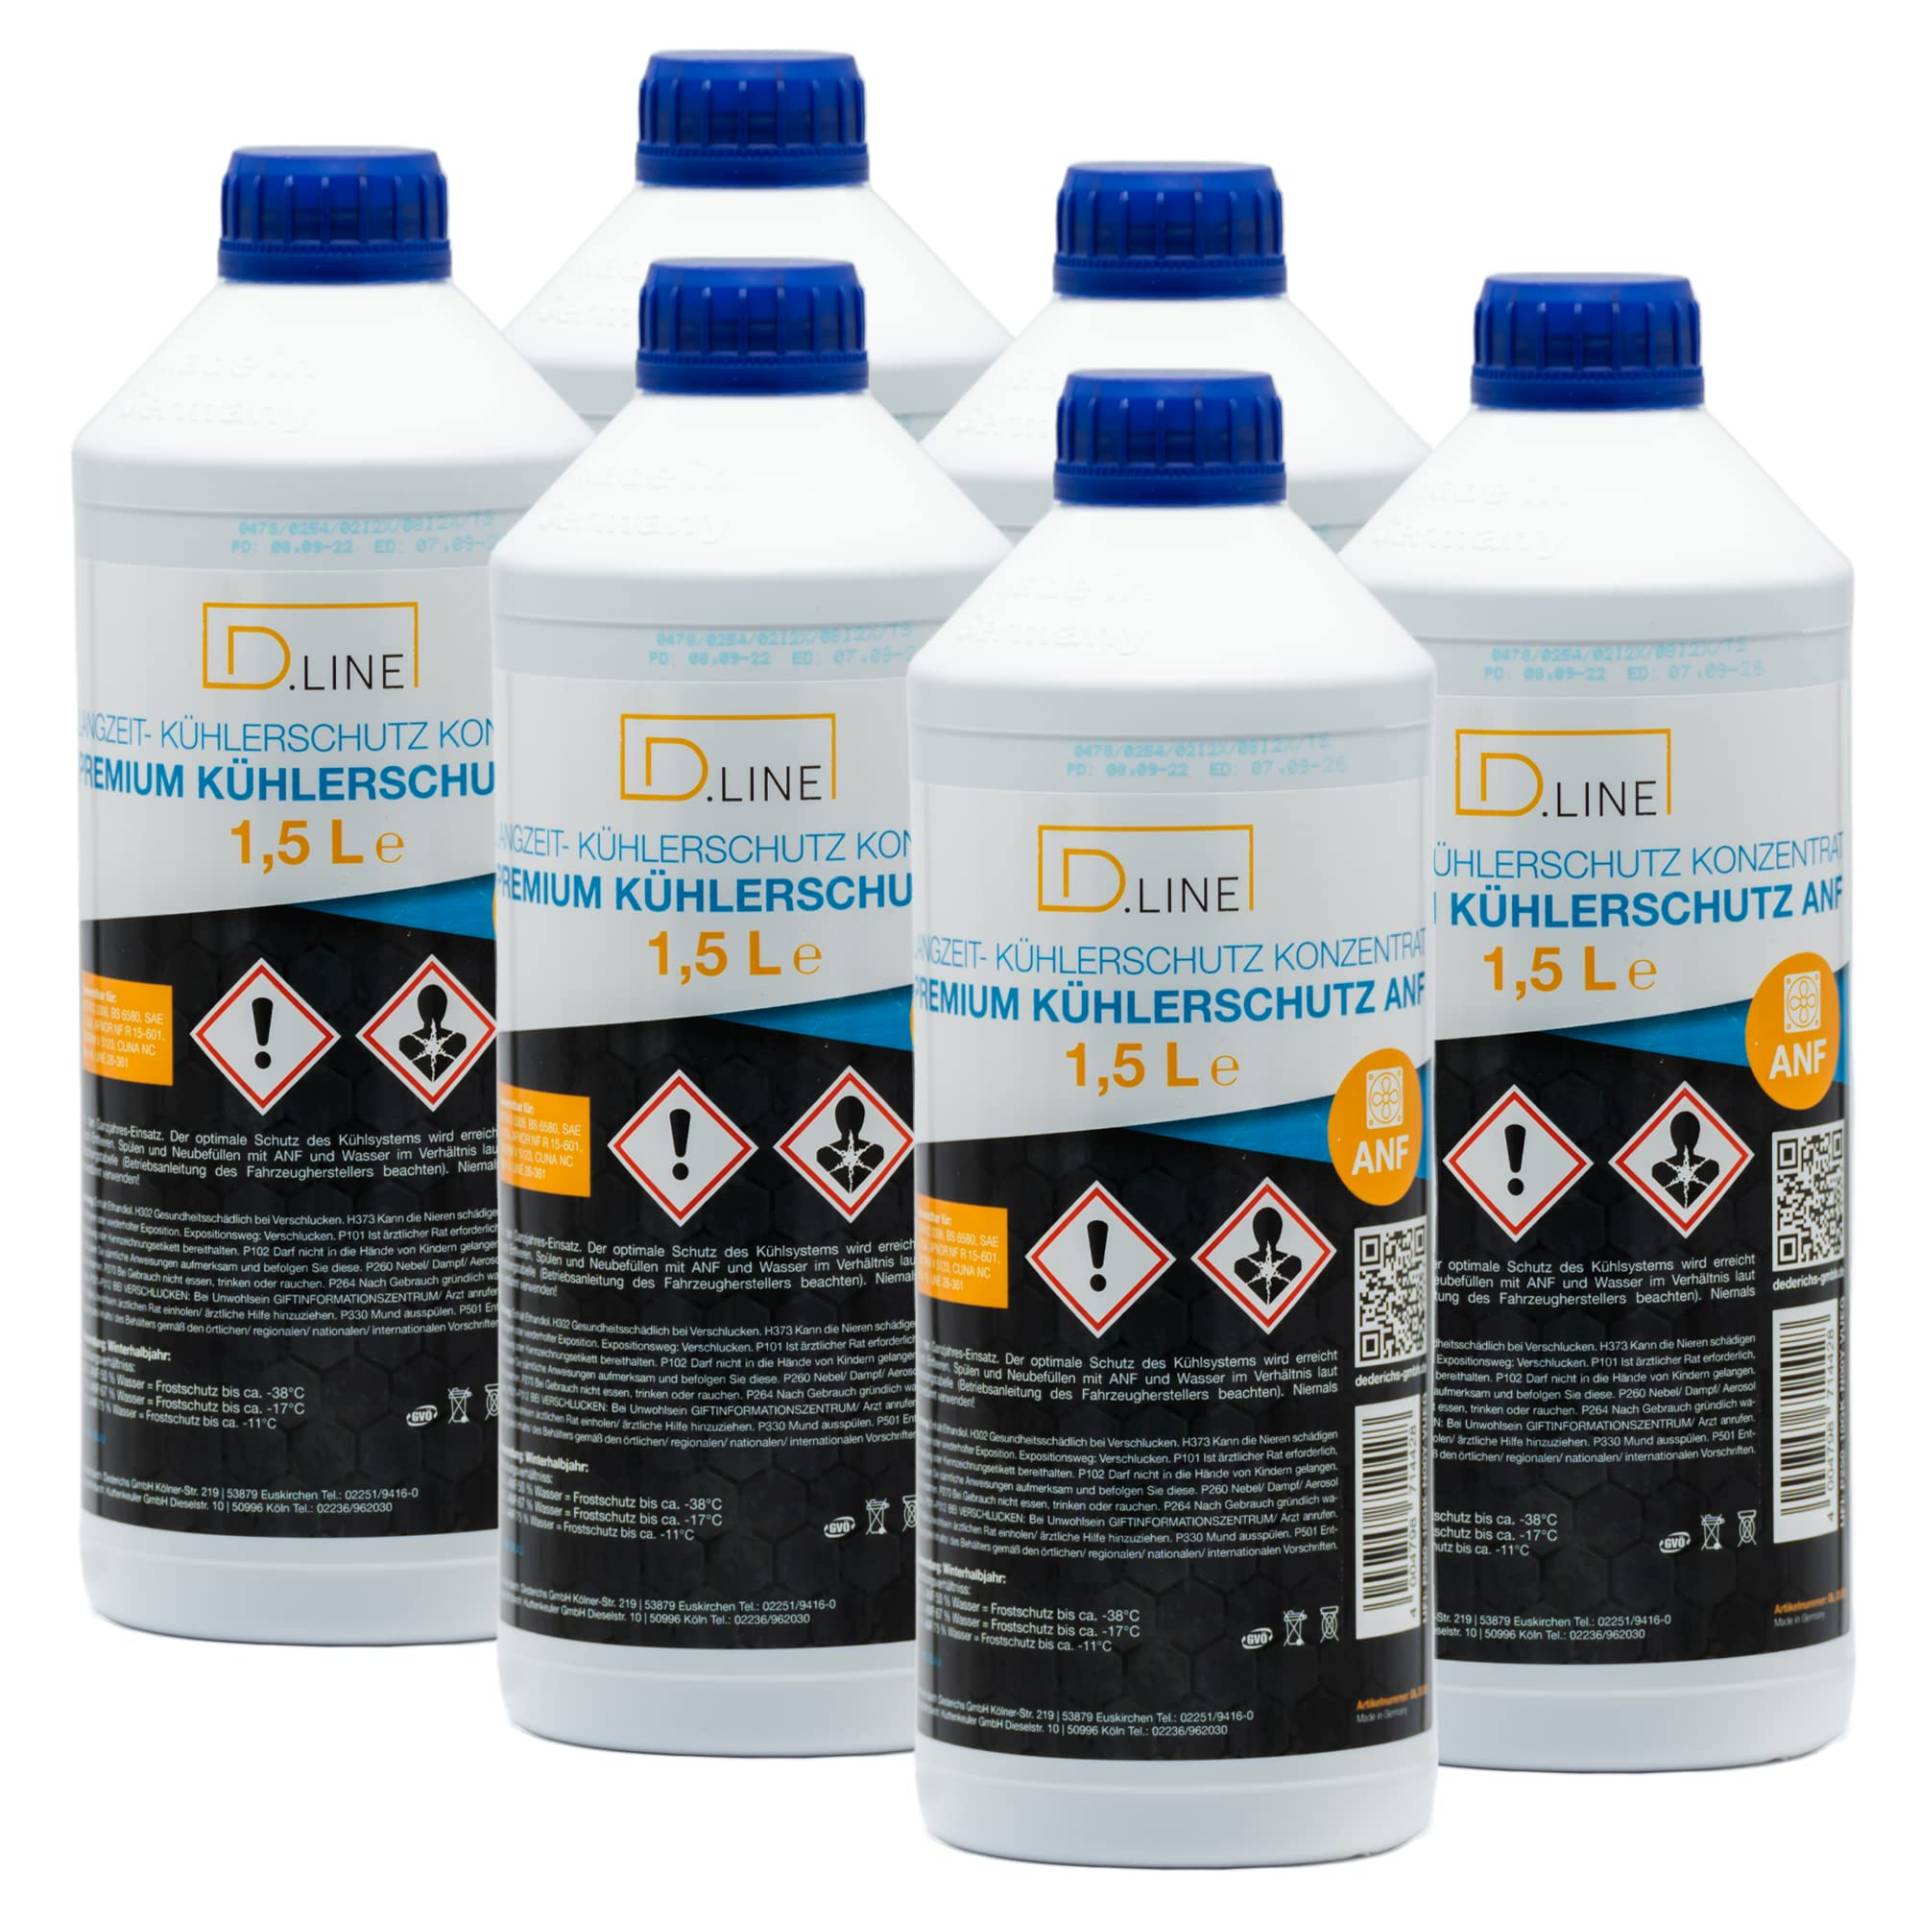 D.LINE Kühlerschutz Konzentrat ANF 40, 1,5 Liter (6) von D.LINE